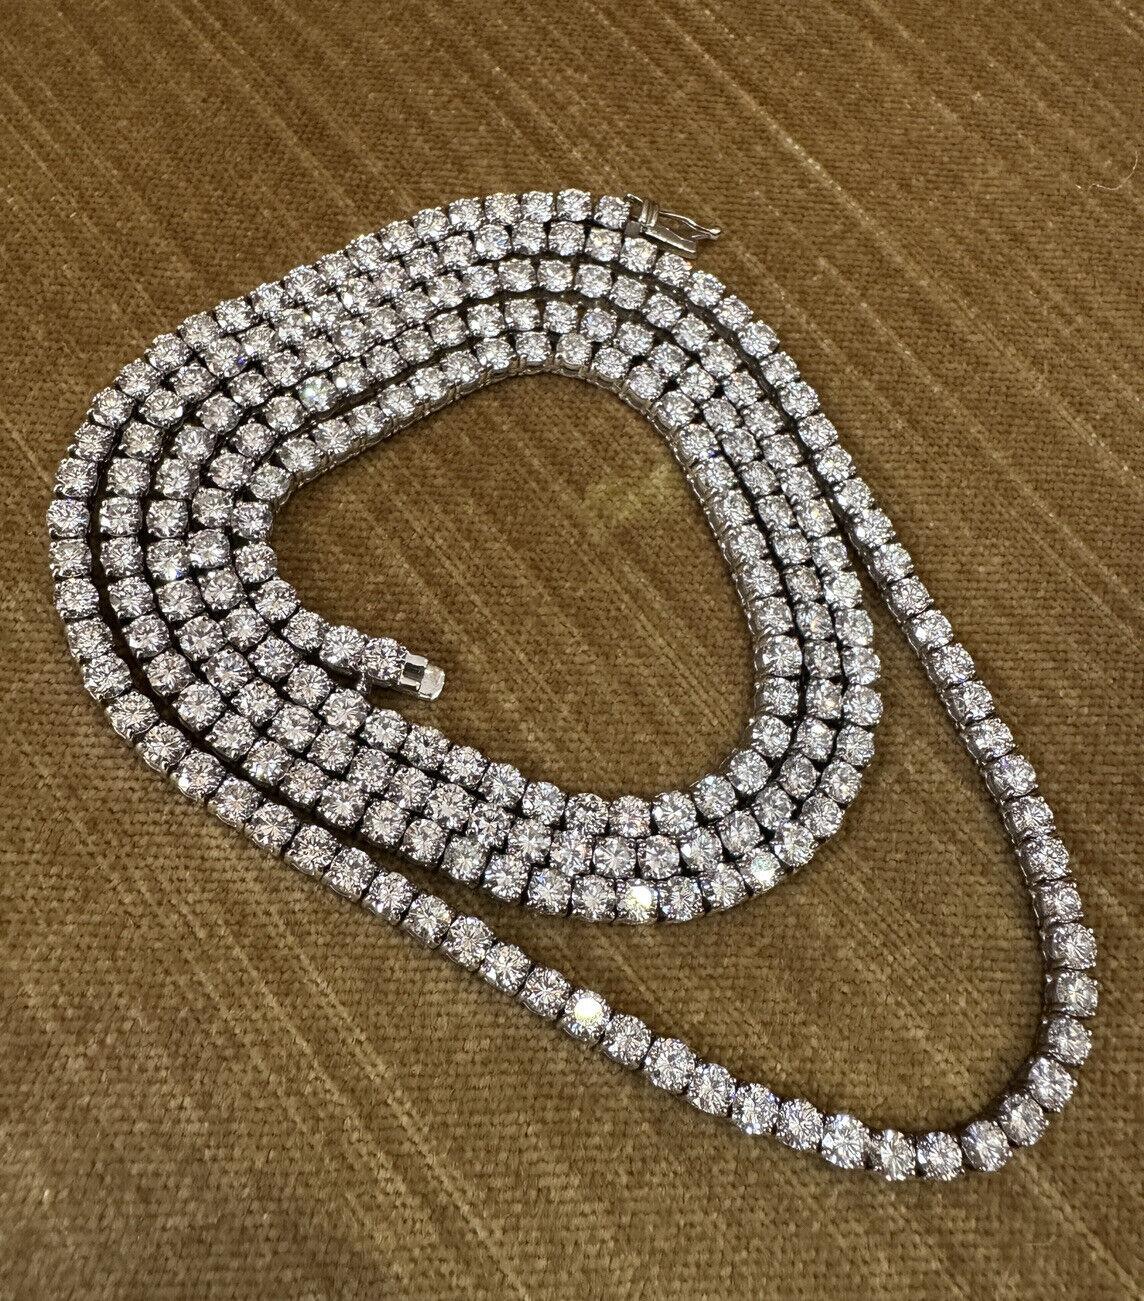 Long collier Riviera luxueux à diamants en ligne caractéristiques 
229 diamants ronds de taille Brilliante sertis dans une monture à quatre griffes.
Le collier est en or blanc 18k avec un poids total de 32,96 carats.
Le collier mesure 31,5 pouces de